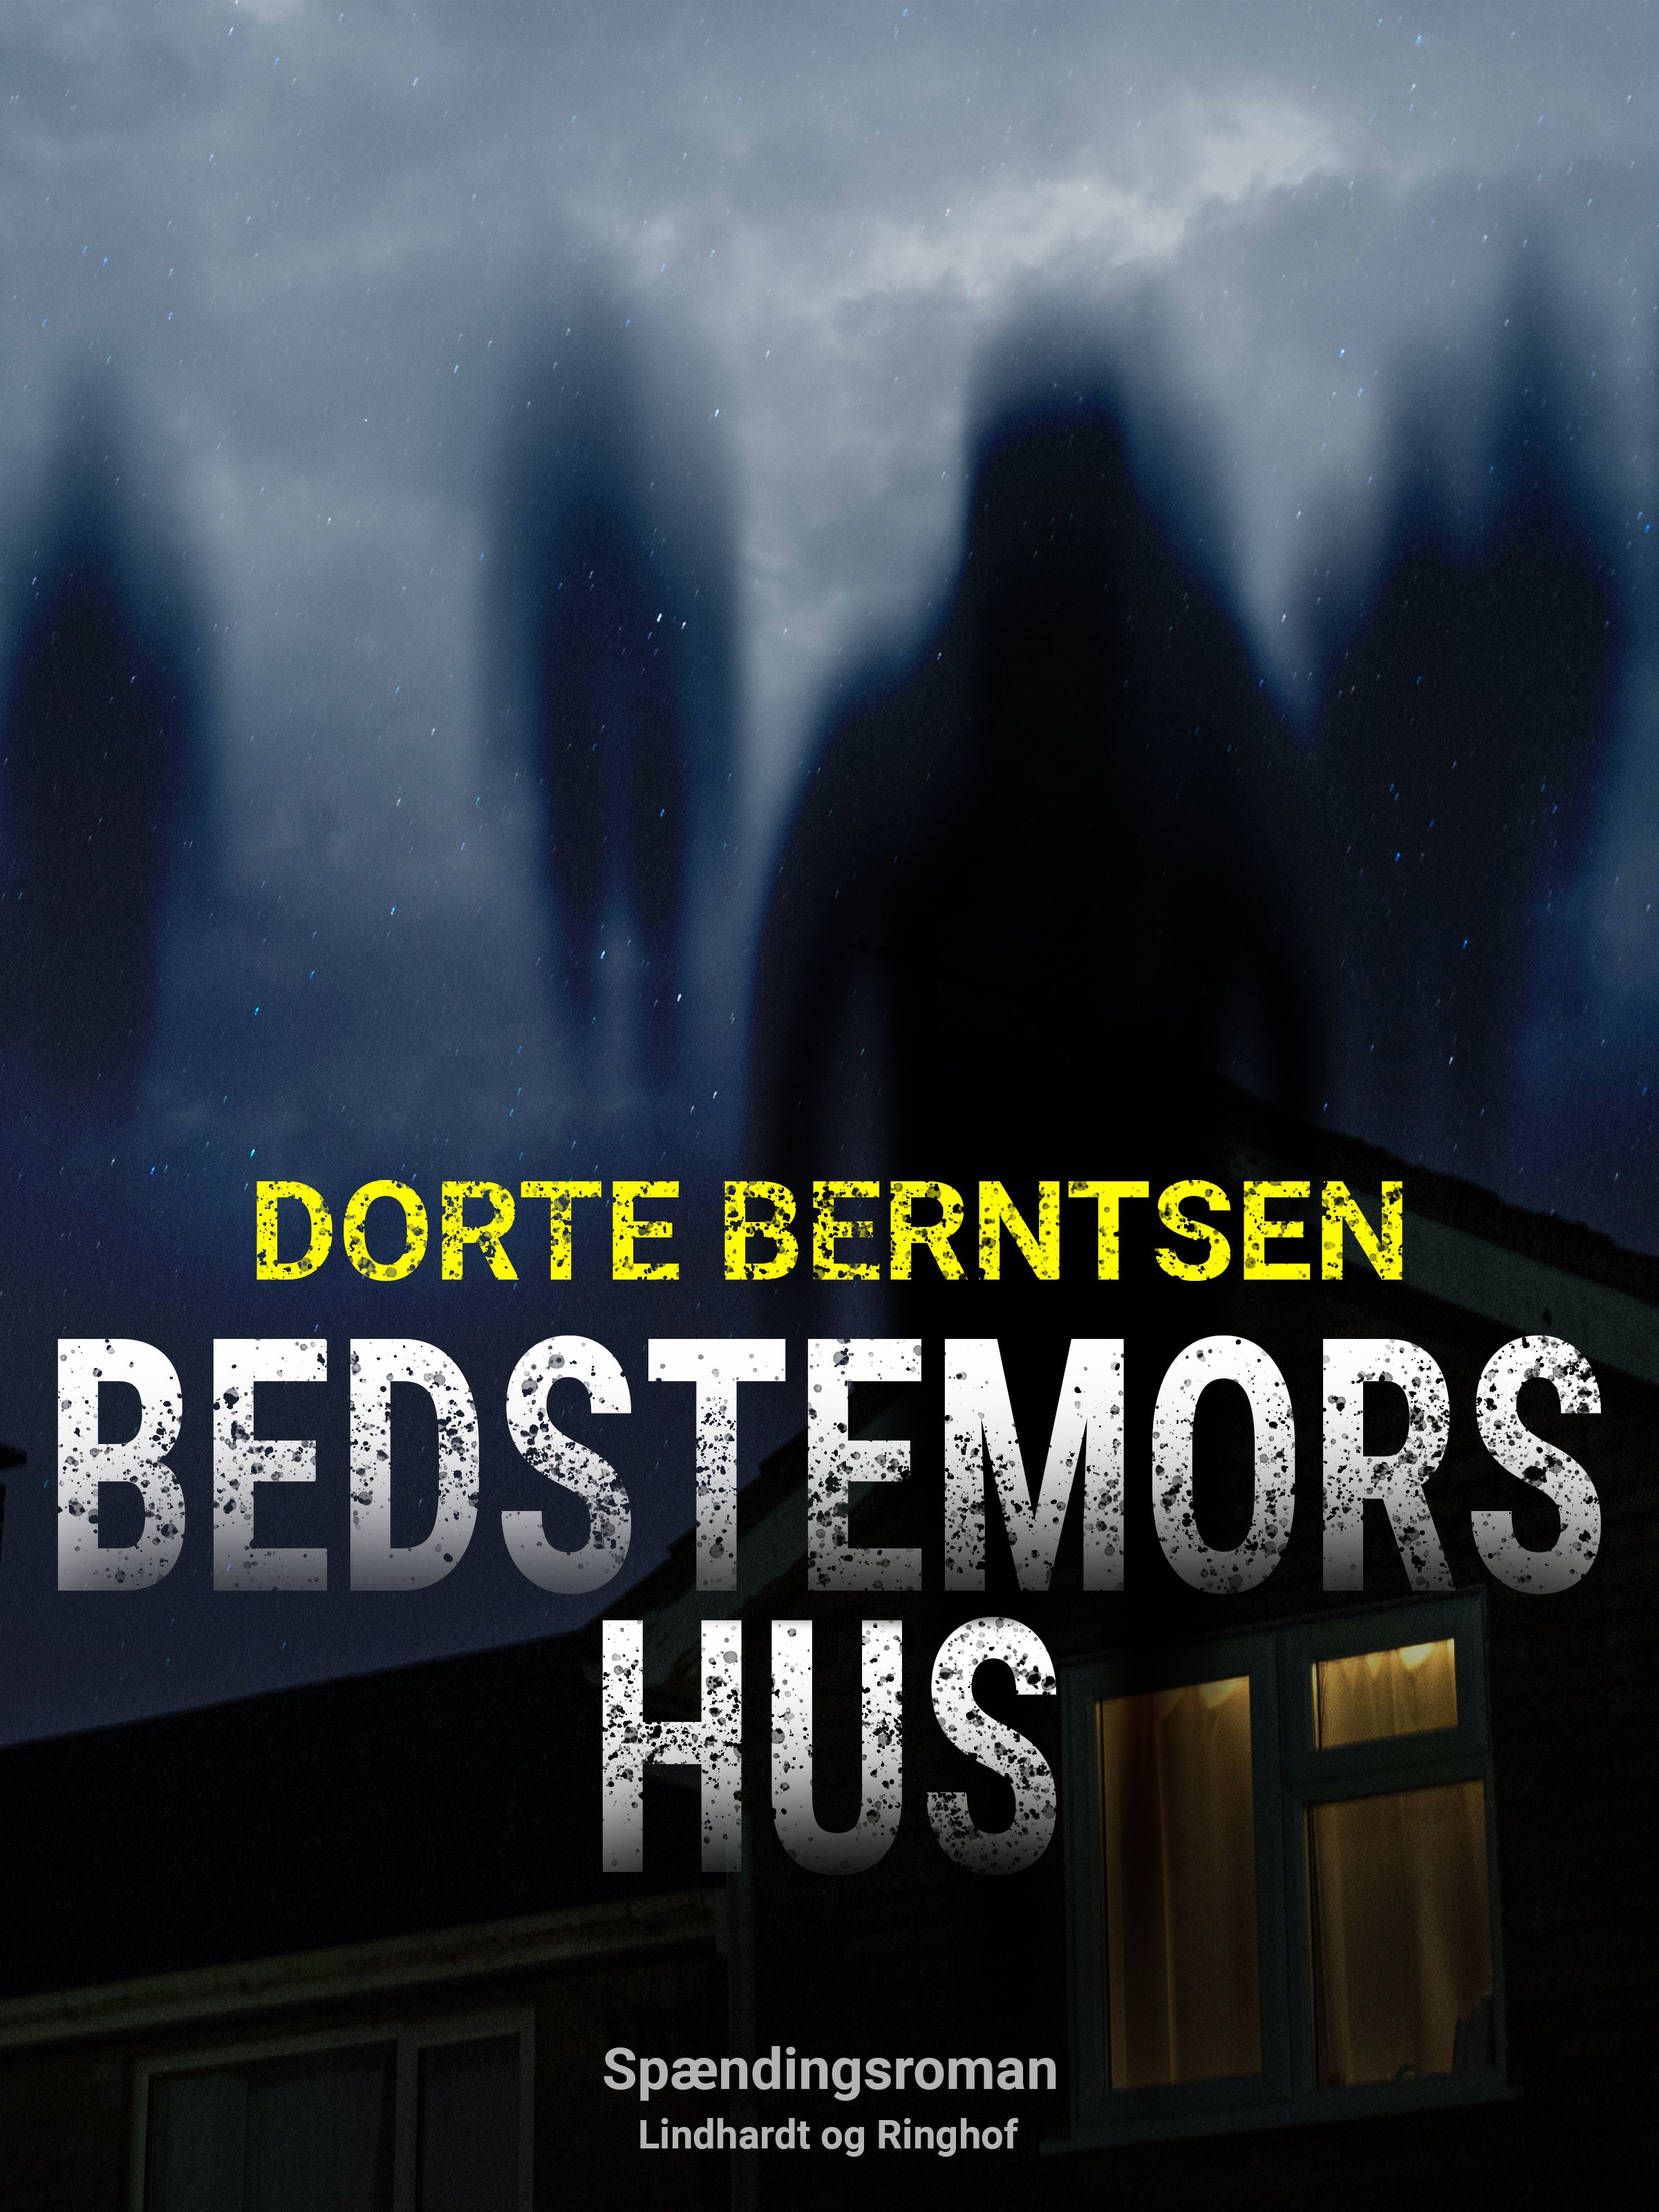 Bedstemors hus, eBook by Dorthe Berntsen